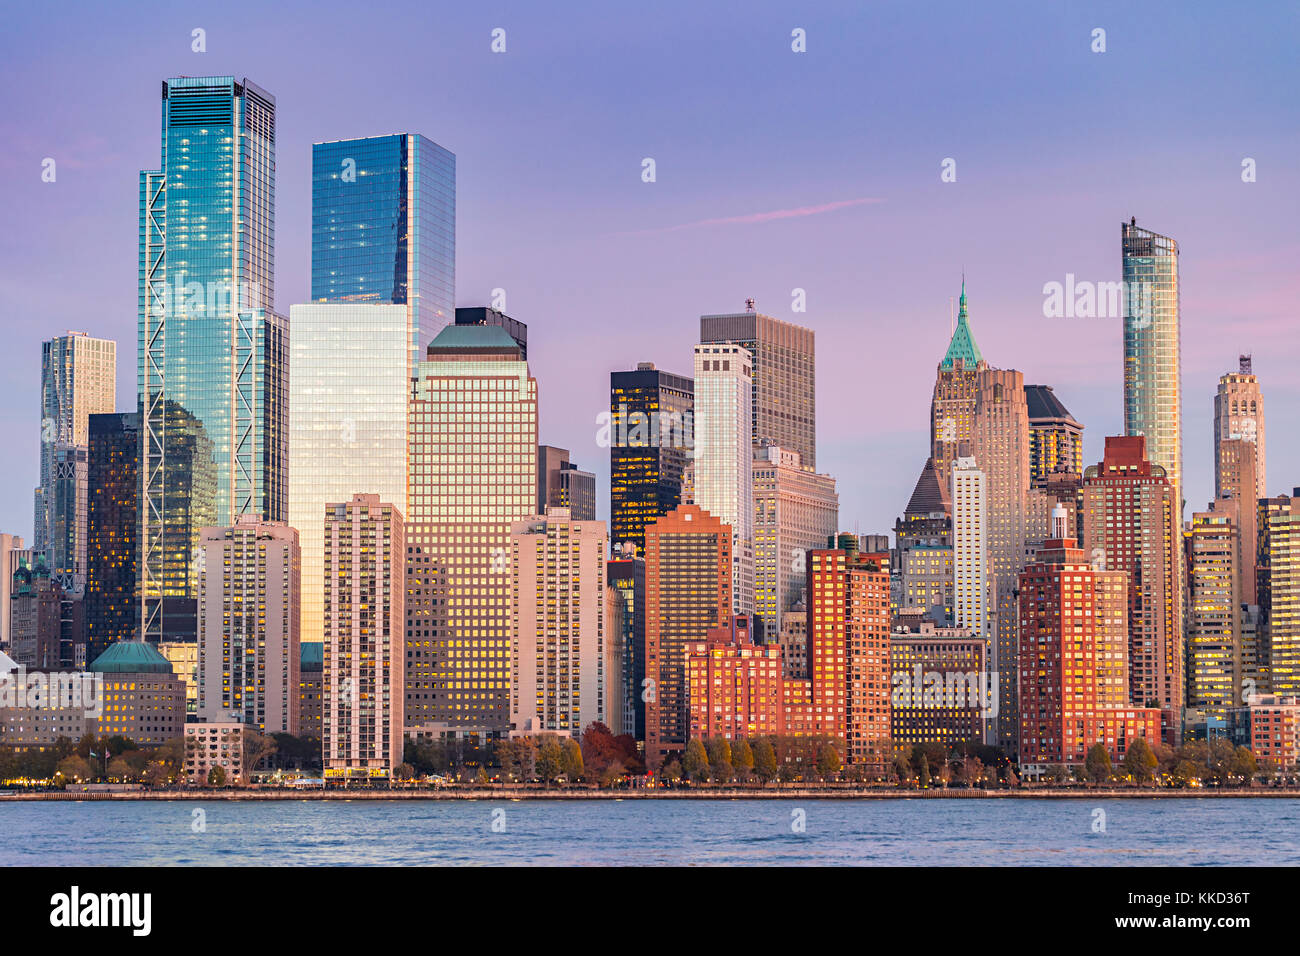 Les bâtiments en verre coloré dans la ville de New York, le centre-ville de Manhattan au soir Banque D'Images